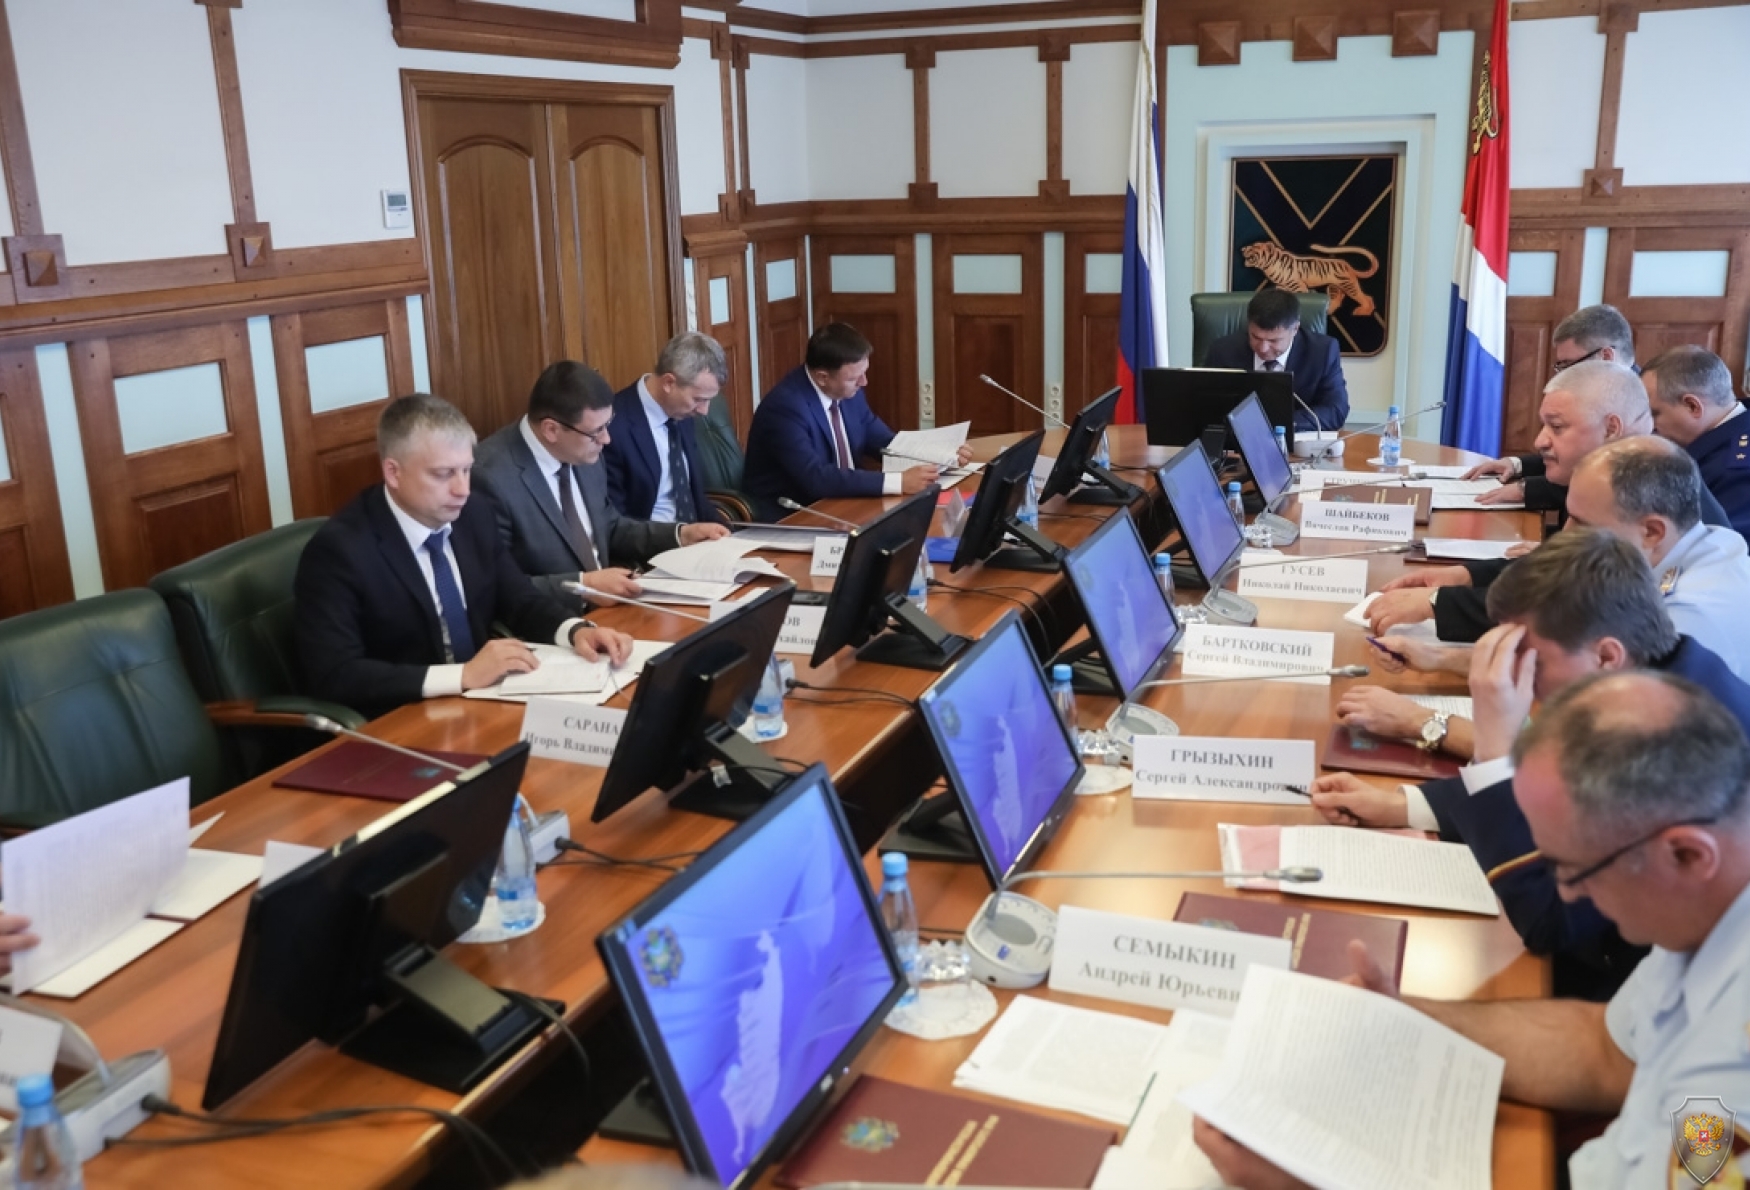 Фото заседания АТК, на фото изображены члены антитеррористической комиссии Приморского края.